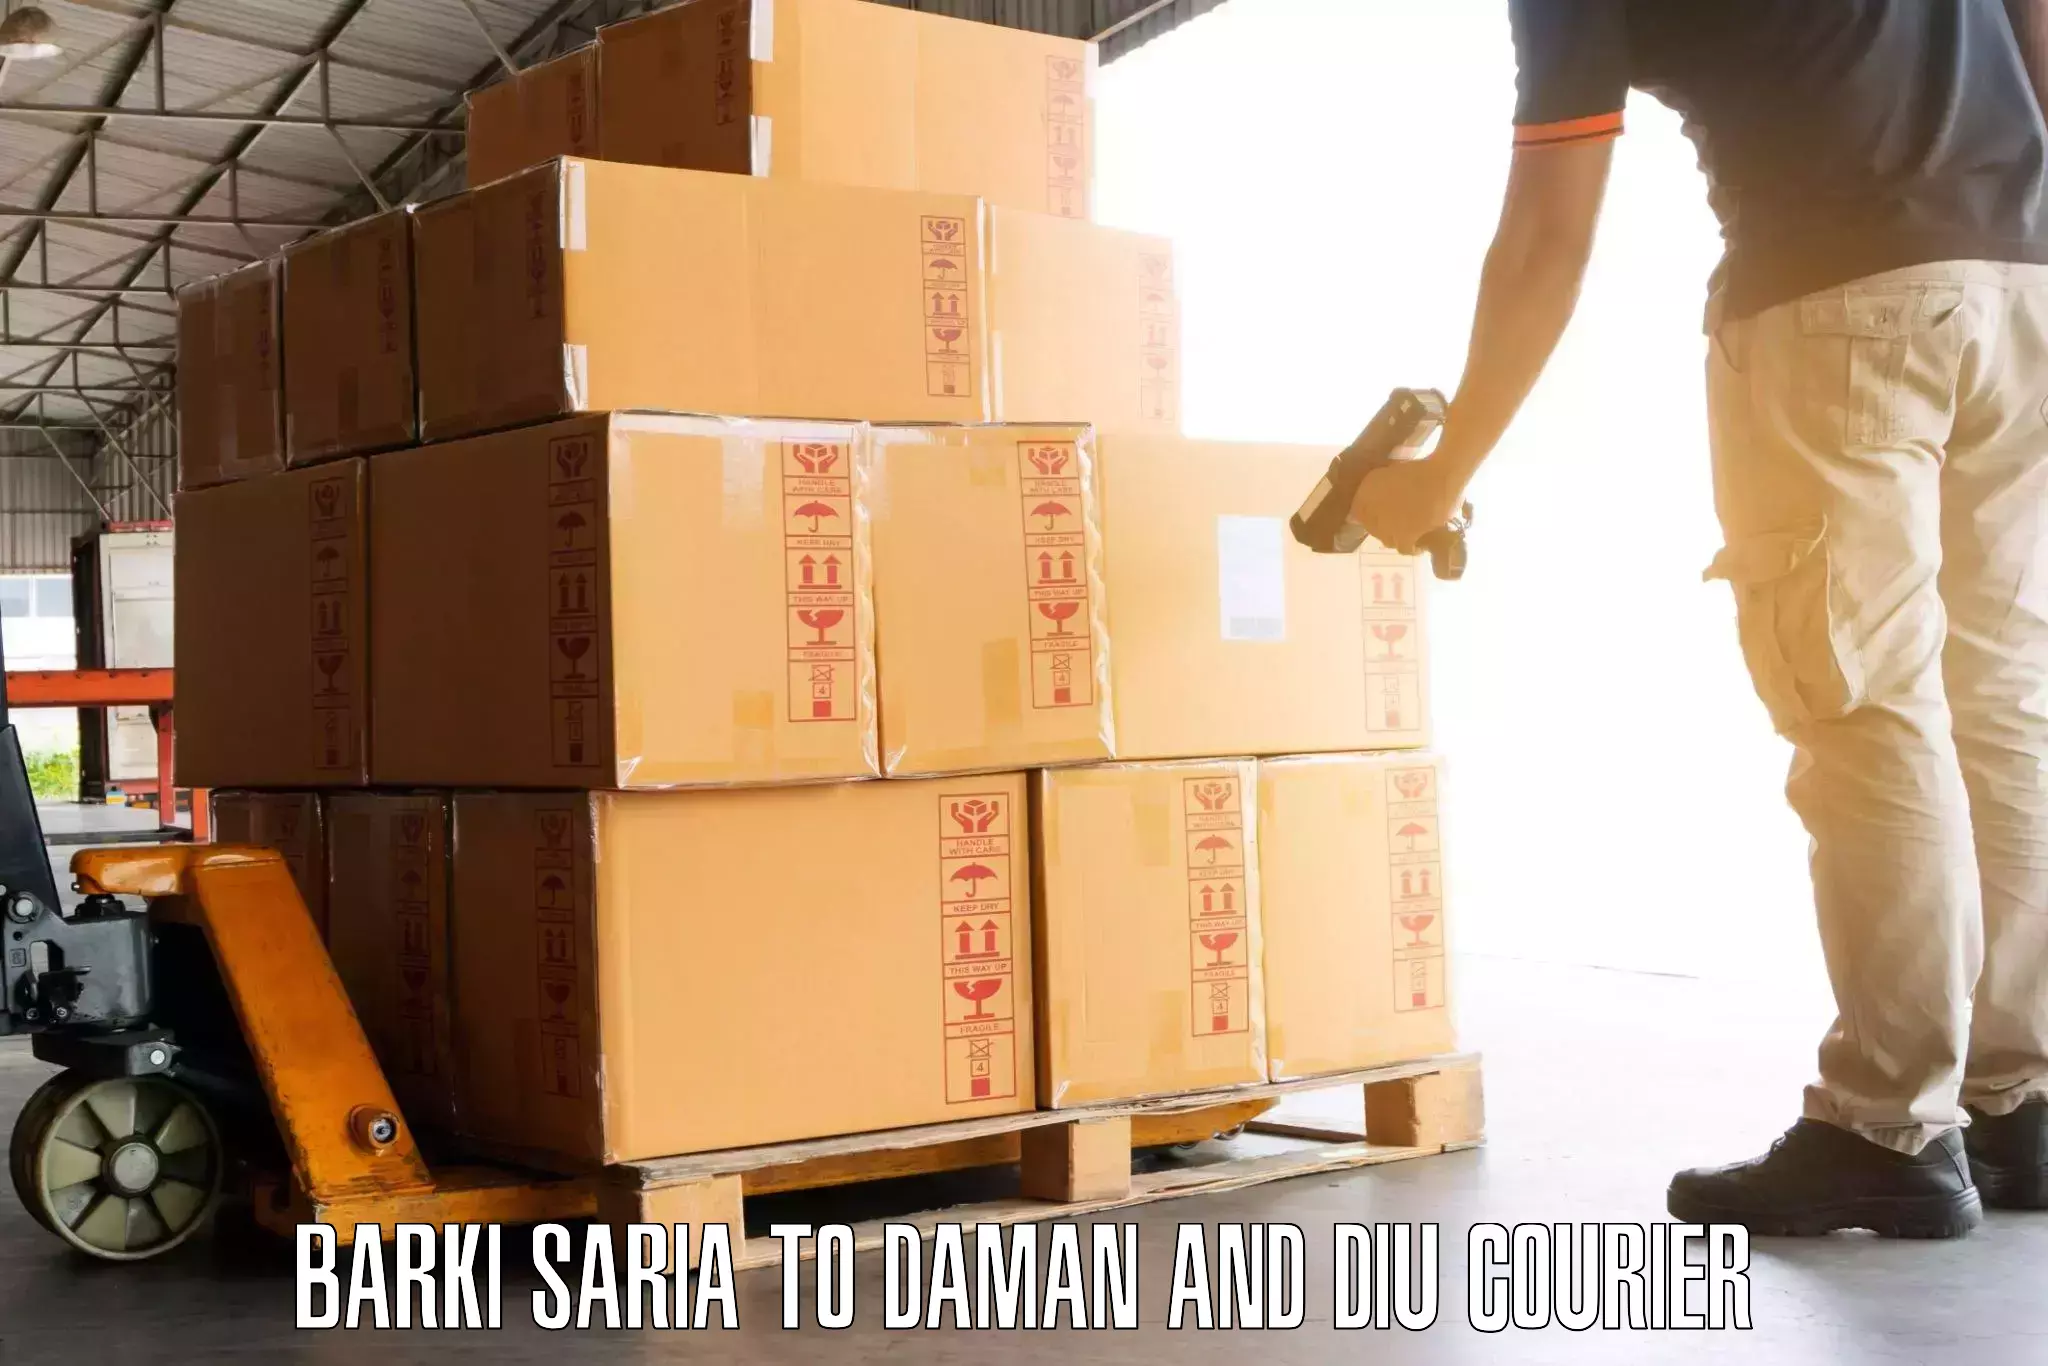 Baggage transport scheduler Barki Saria to Daman